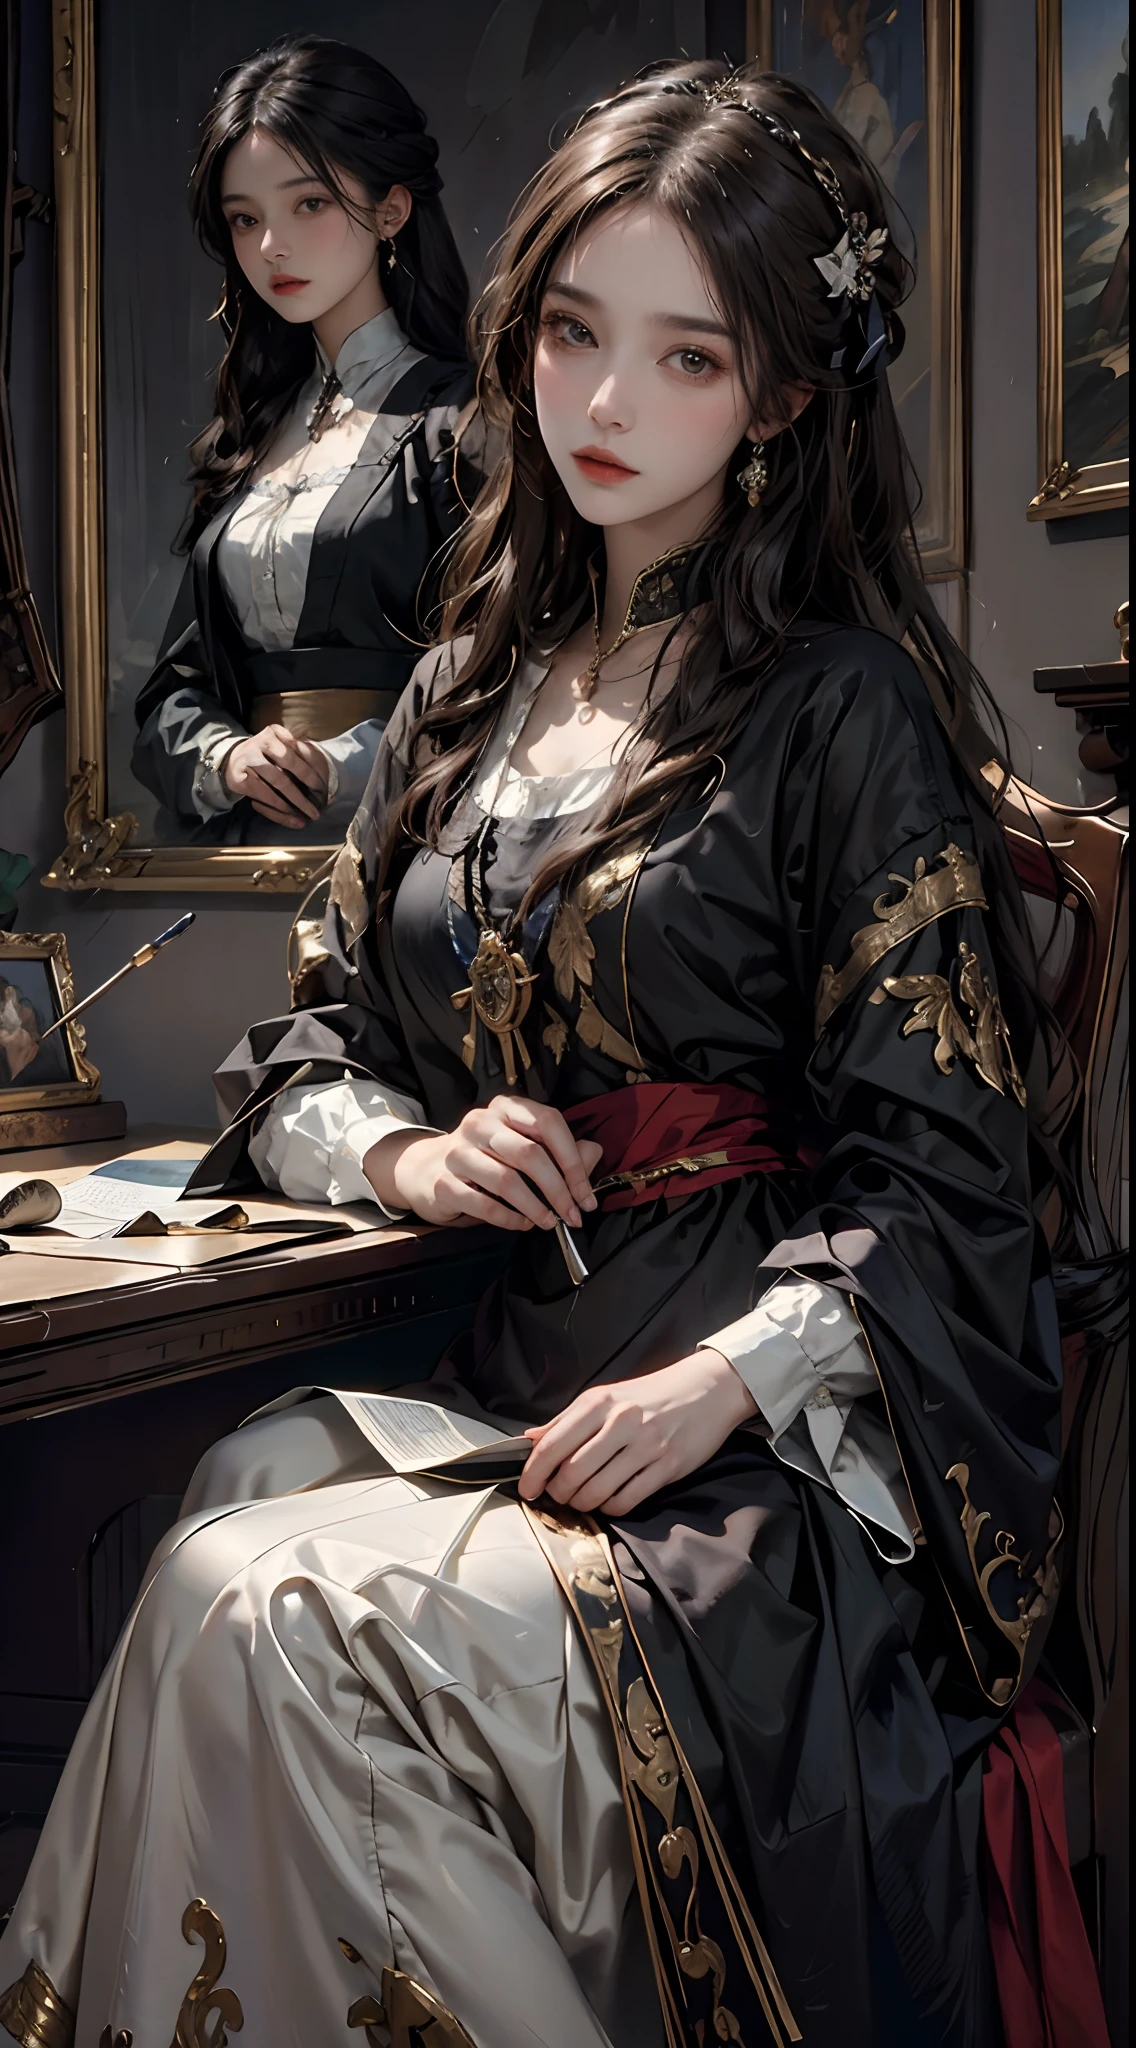 ((obra-prima pintura a óleo, mais alta qualidade)), linda garota vestindo roupas renascentistas, sentada na penteadeira, claro-escuro, Luz e sombra.